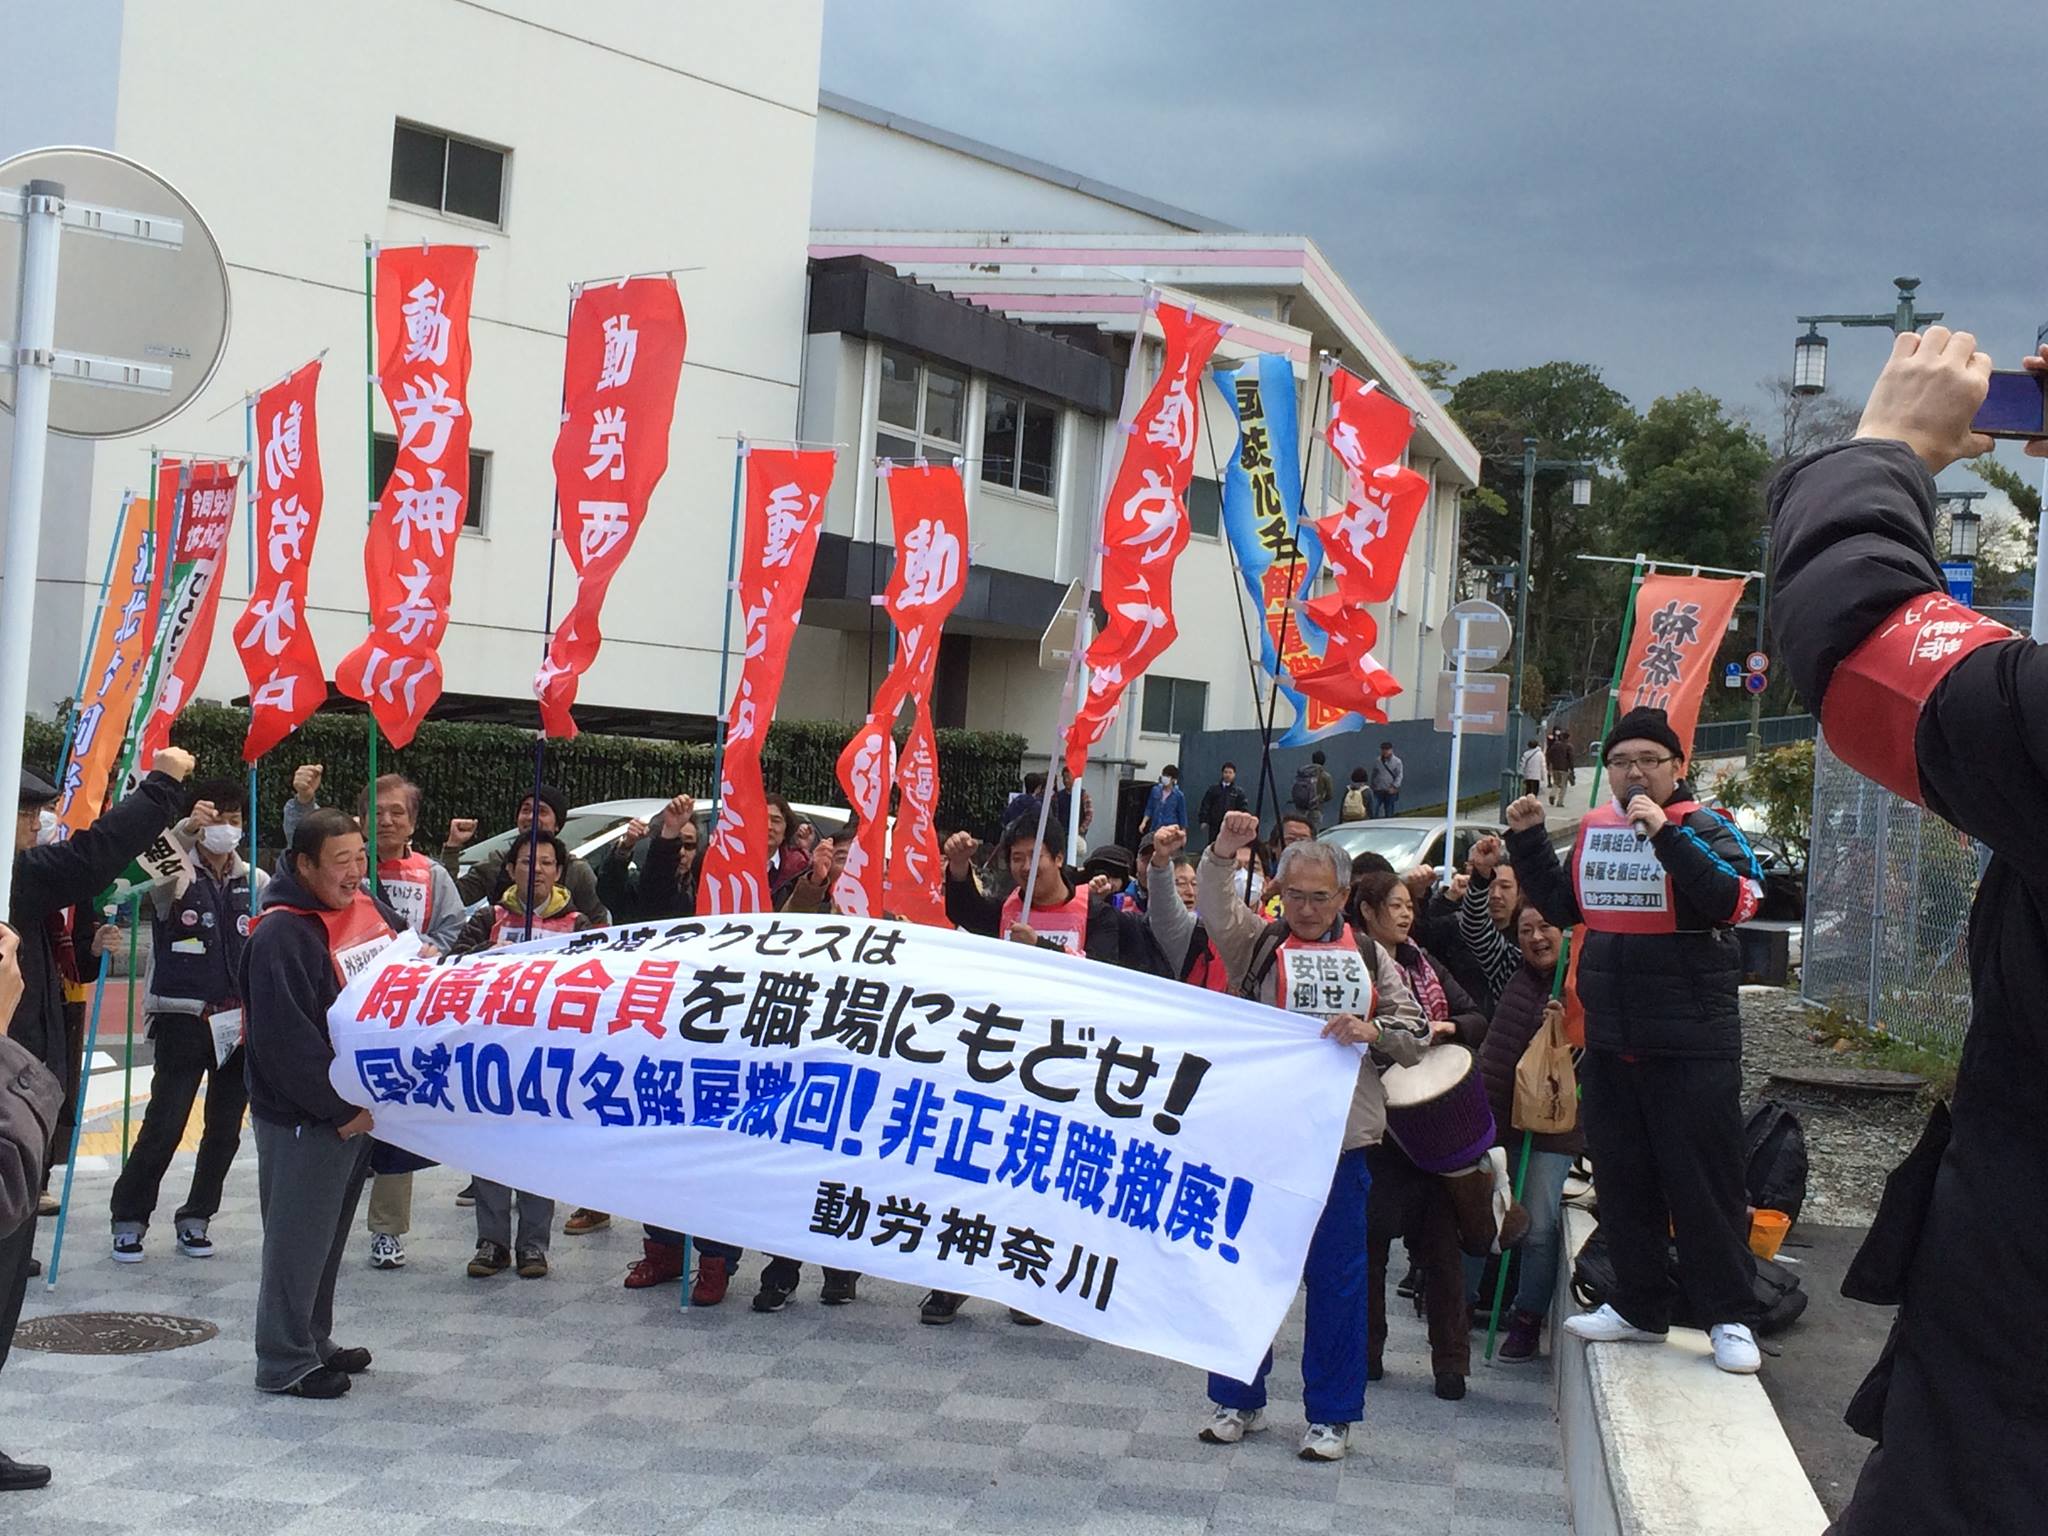 2月21日、動労神奈川・時廣組合員の解雇撤回闘争に動労総連合が結集し、声をあげた_d0155415_15572178.jpg